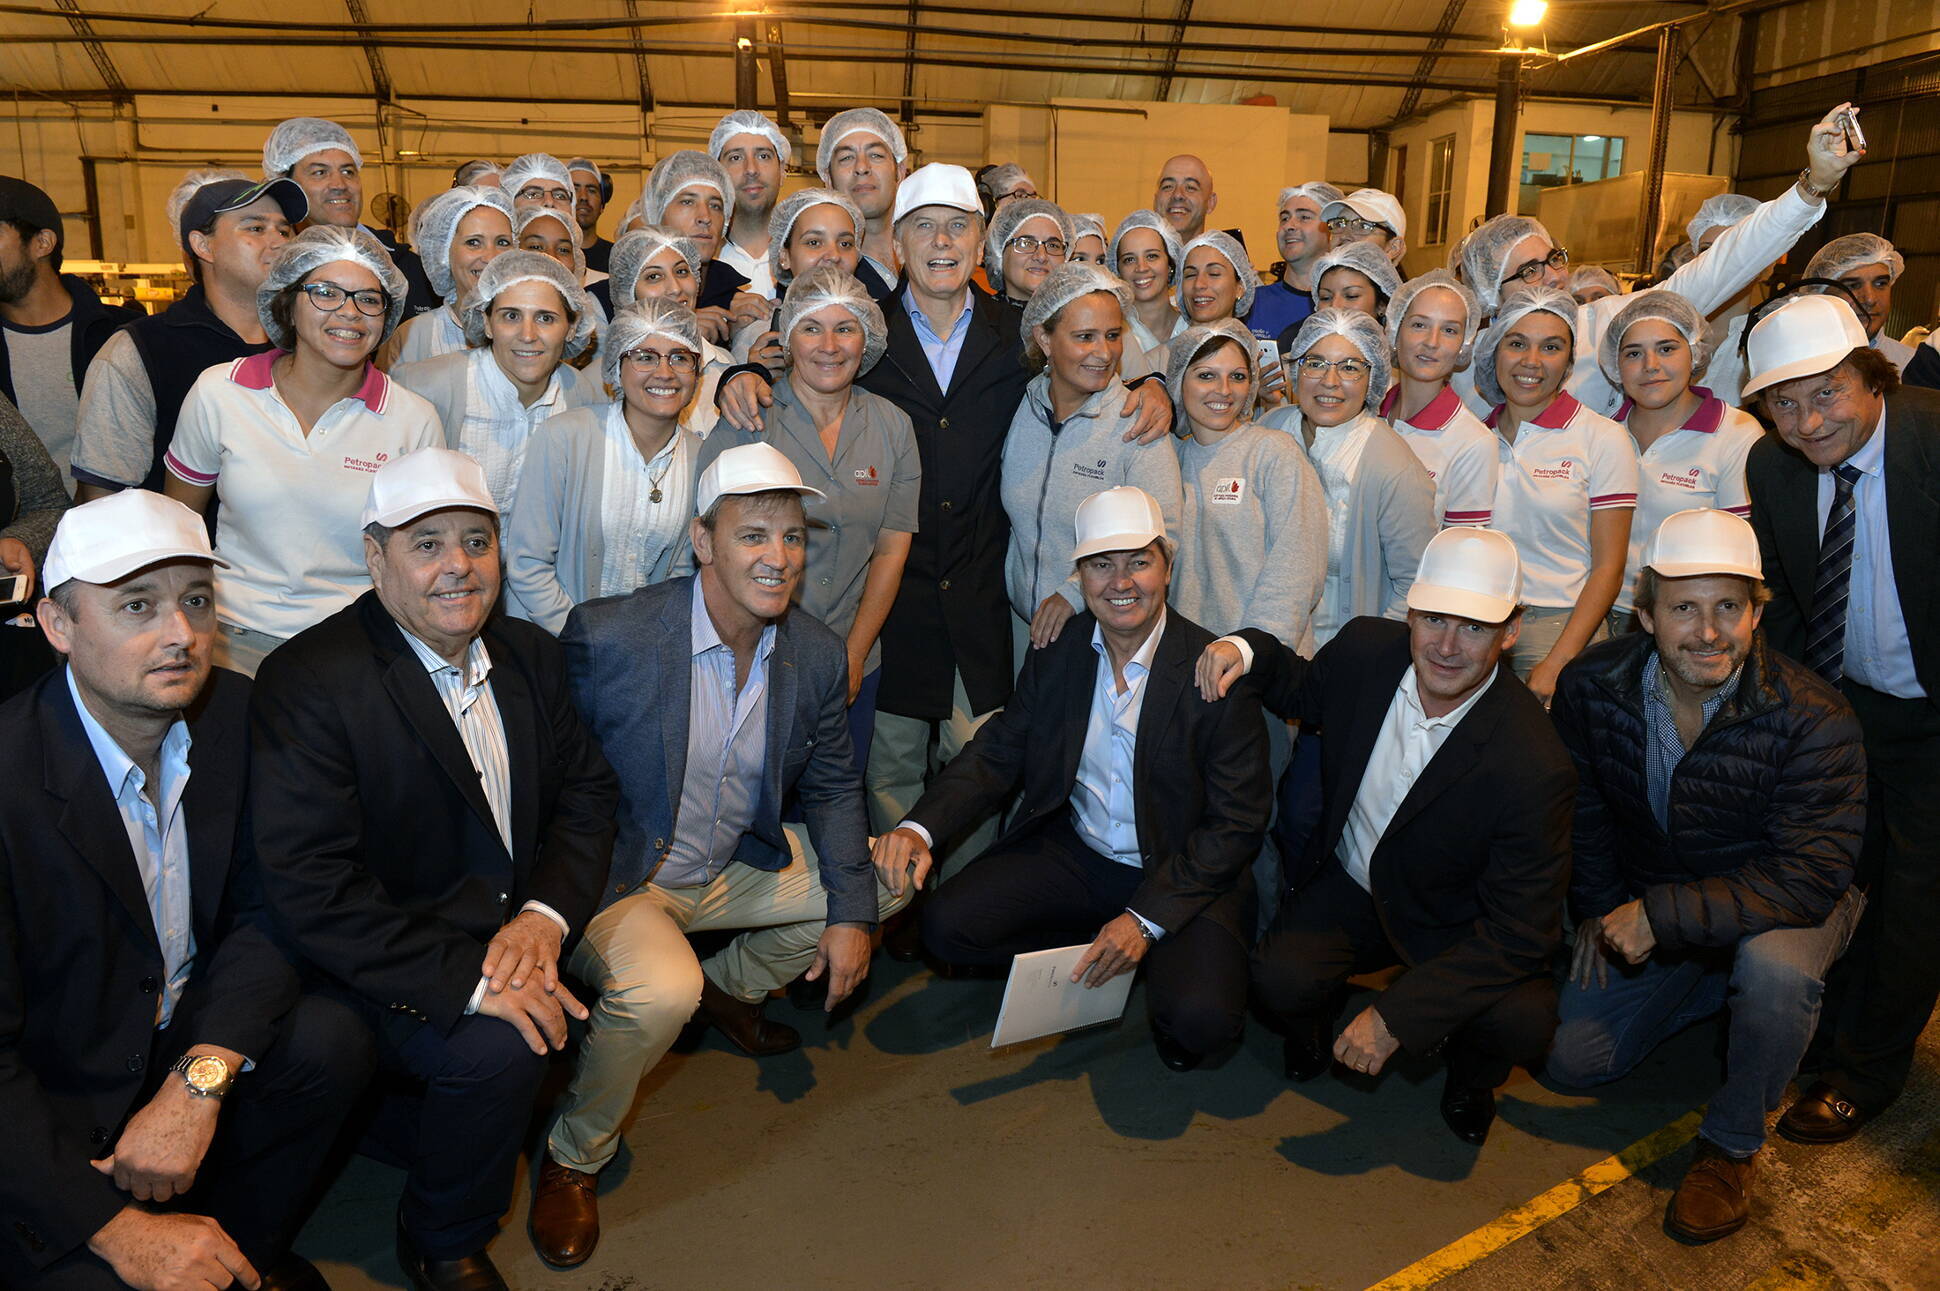 El Presidente recorrió una fábrica y un laboratorio en Paraná